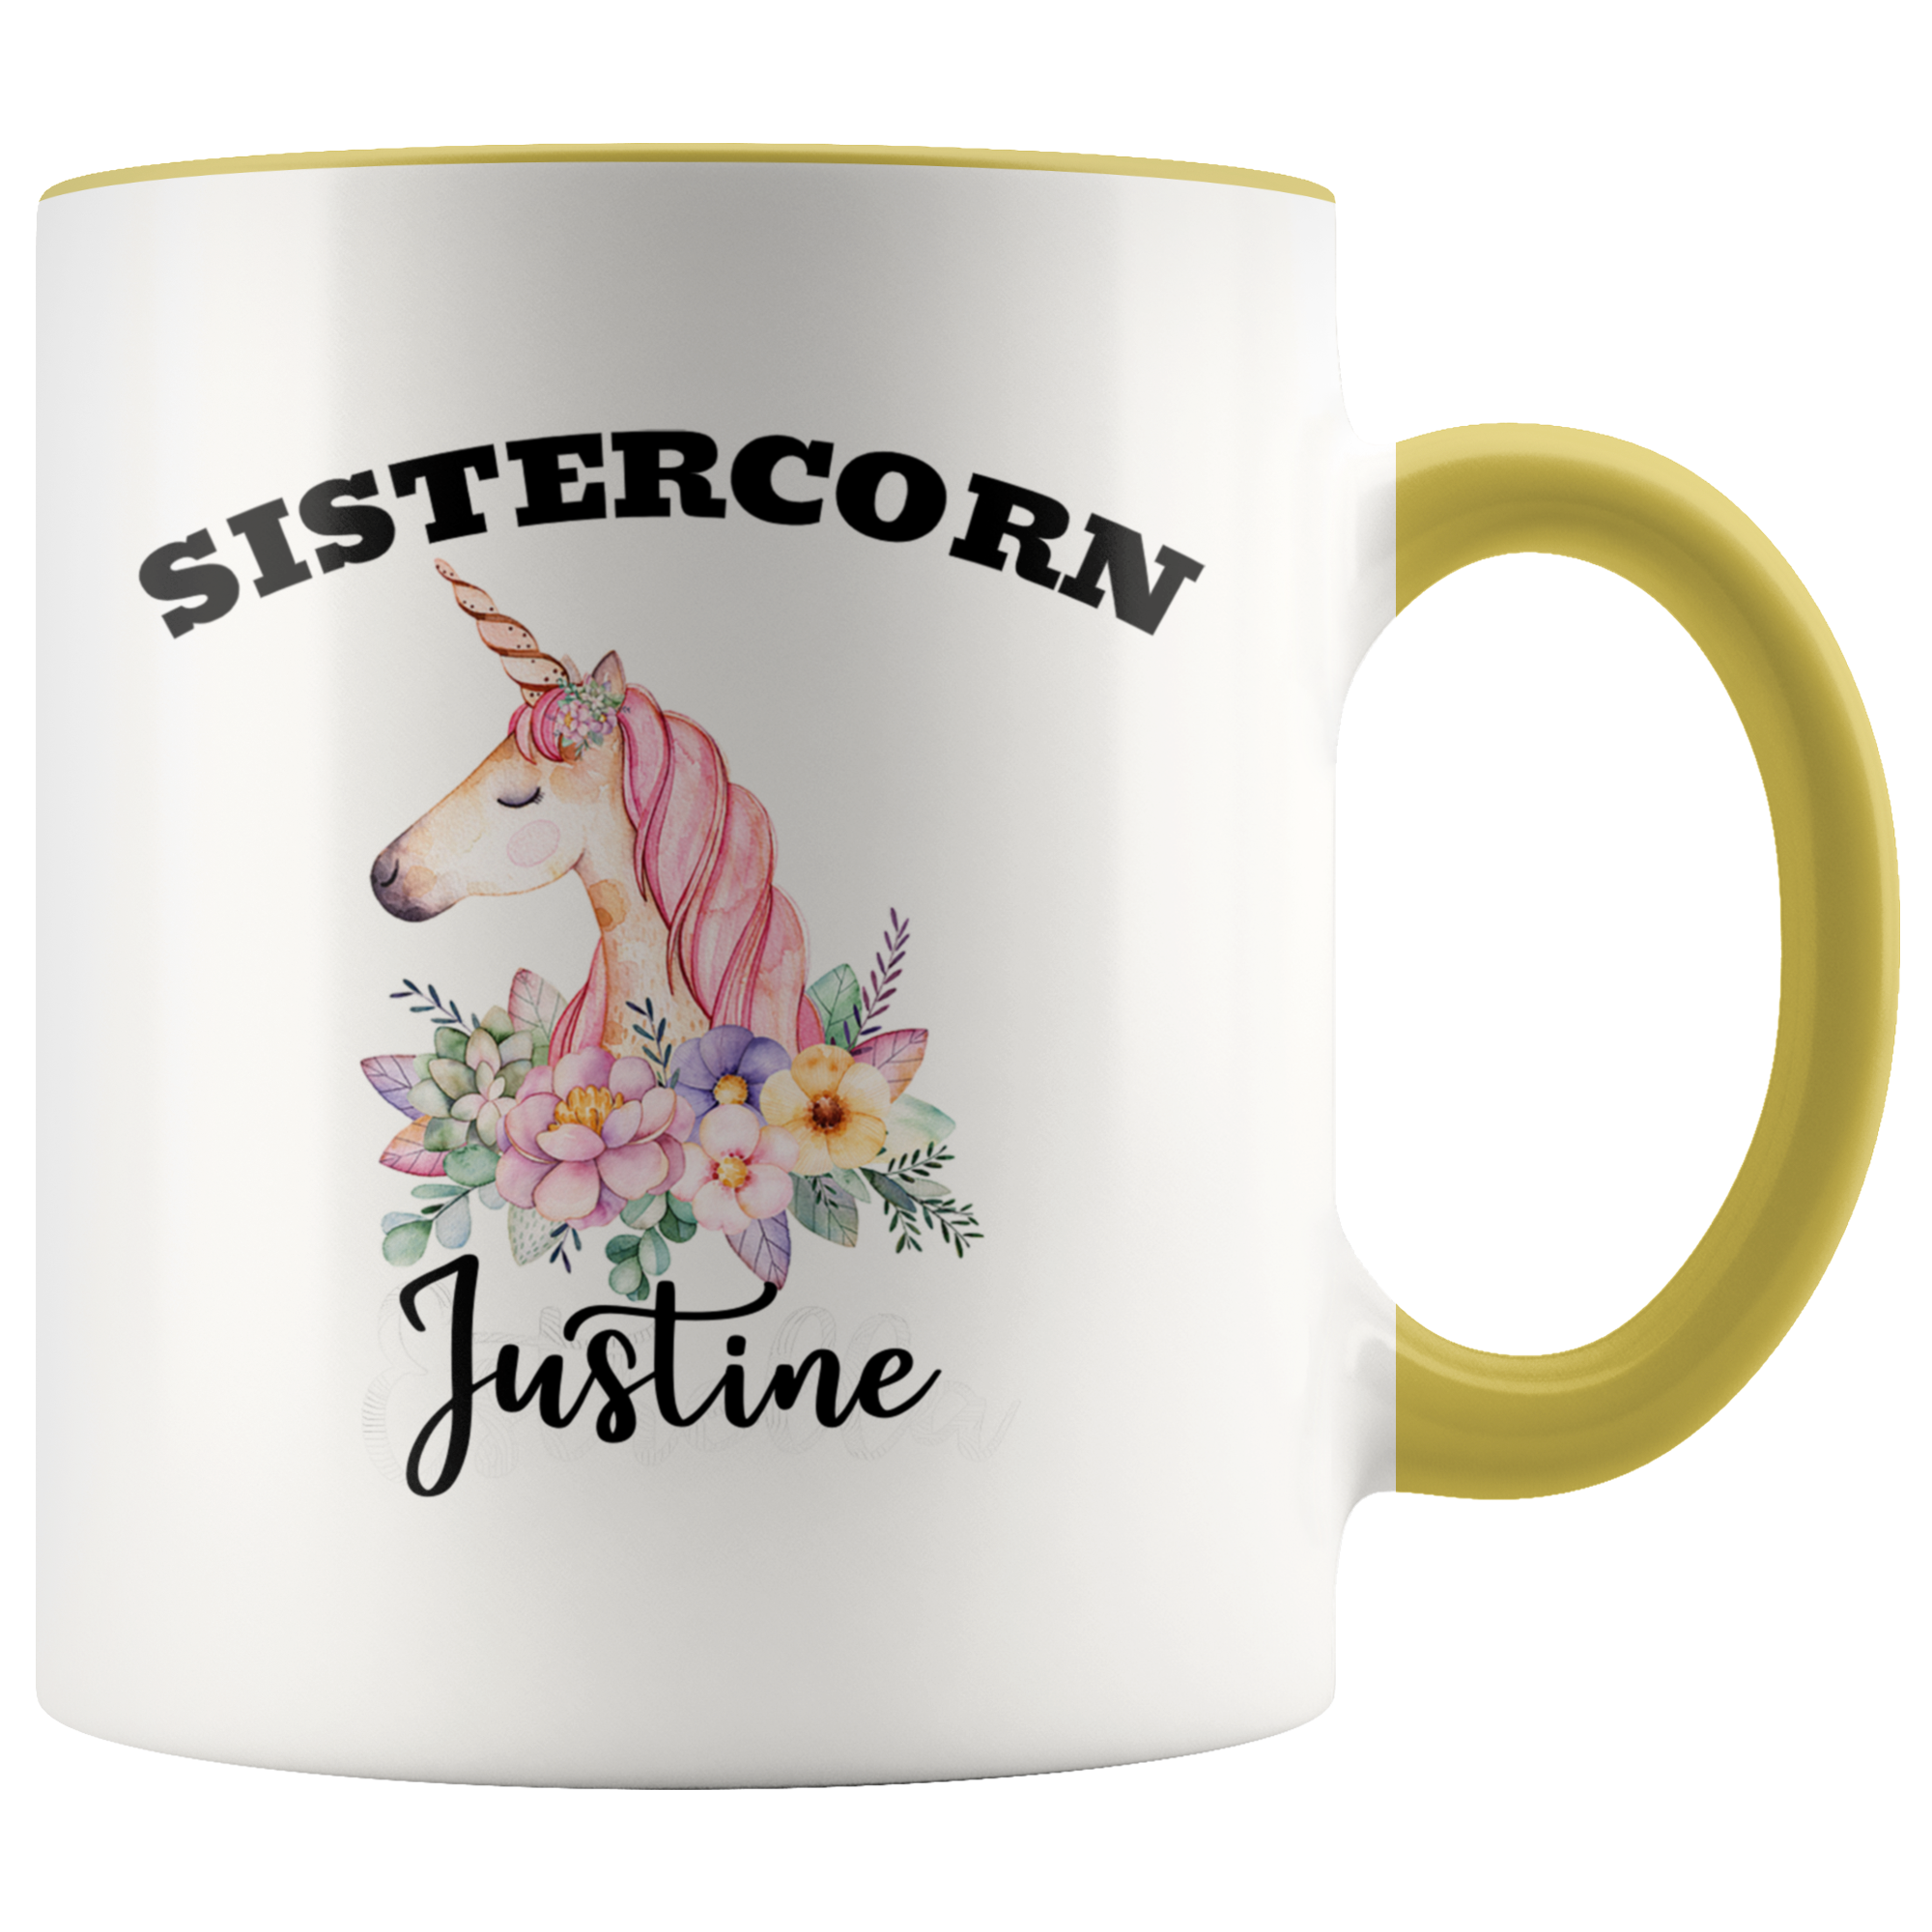 Sistercorn Mug - Justine